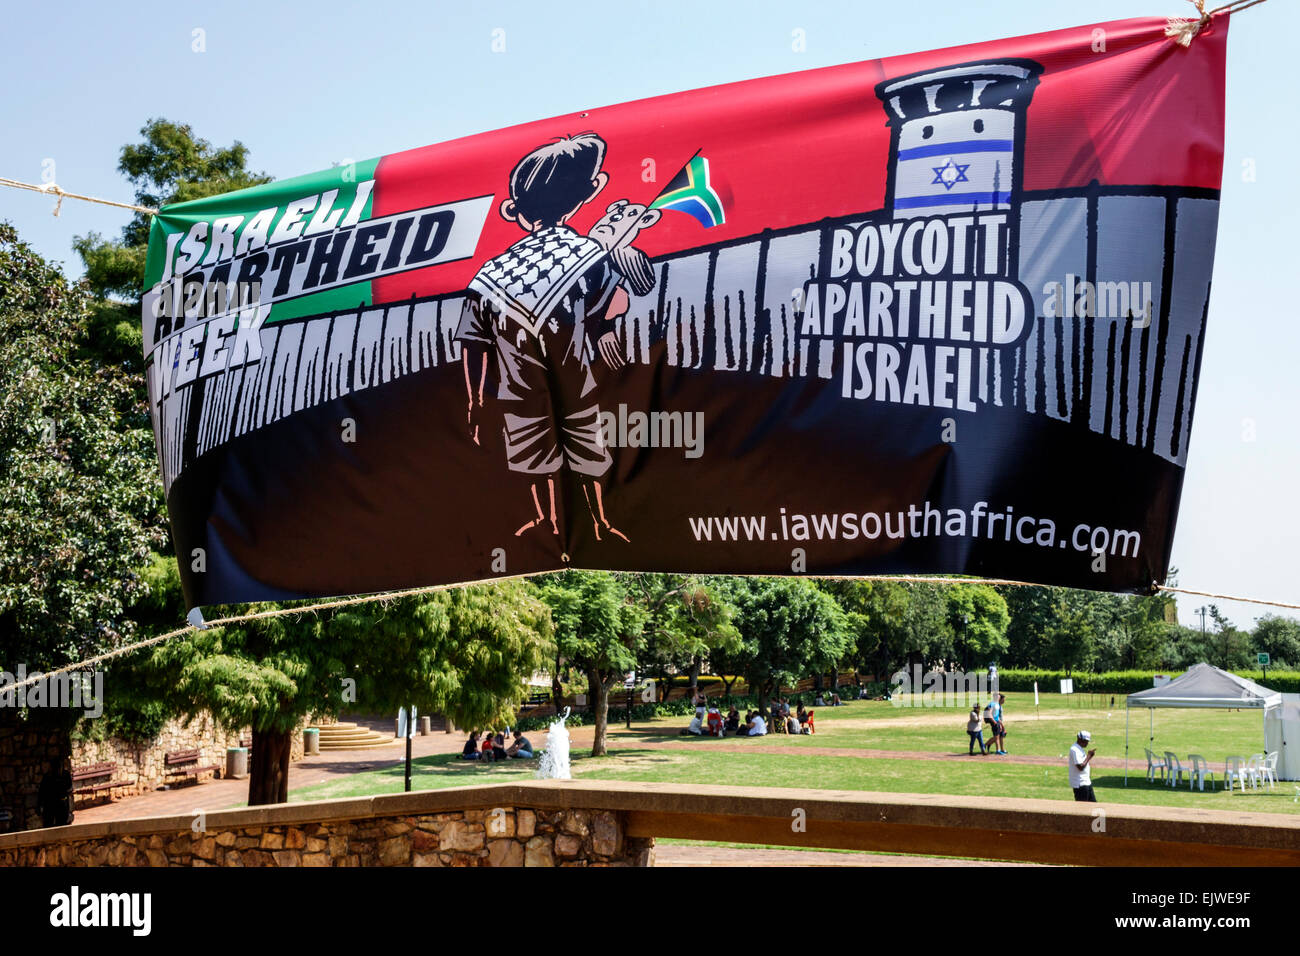 Johannesburg Südafrika,Braamfontein,Wits University,University of the Witwatersrand,Hochschulbildung,East Campus,Banner,Protest,politisch,israelisch Stockfoto